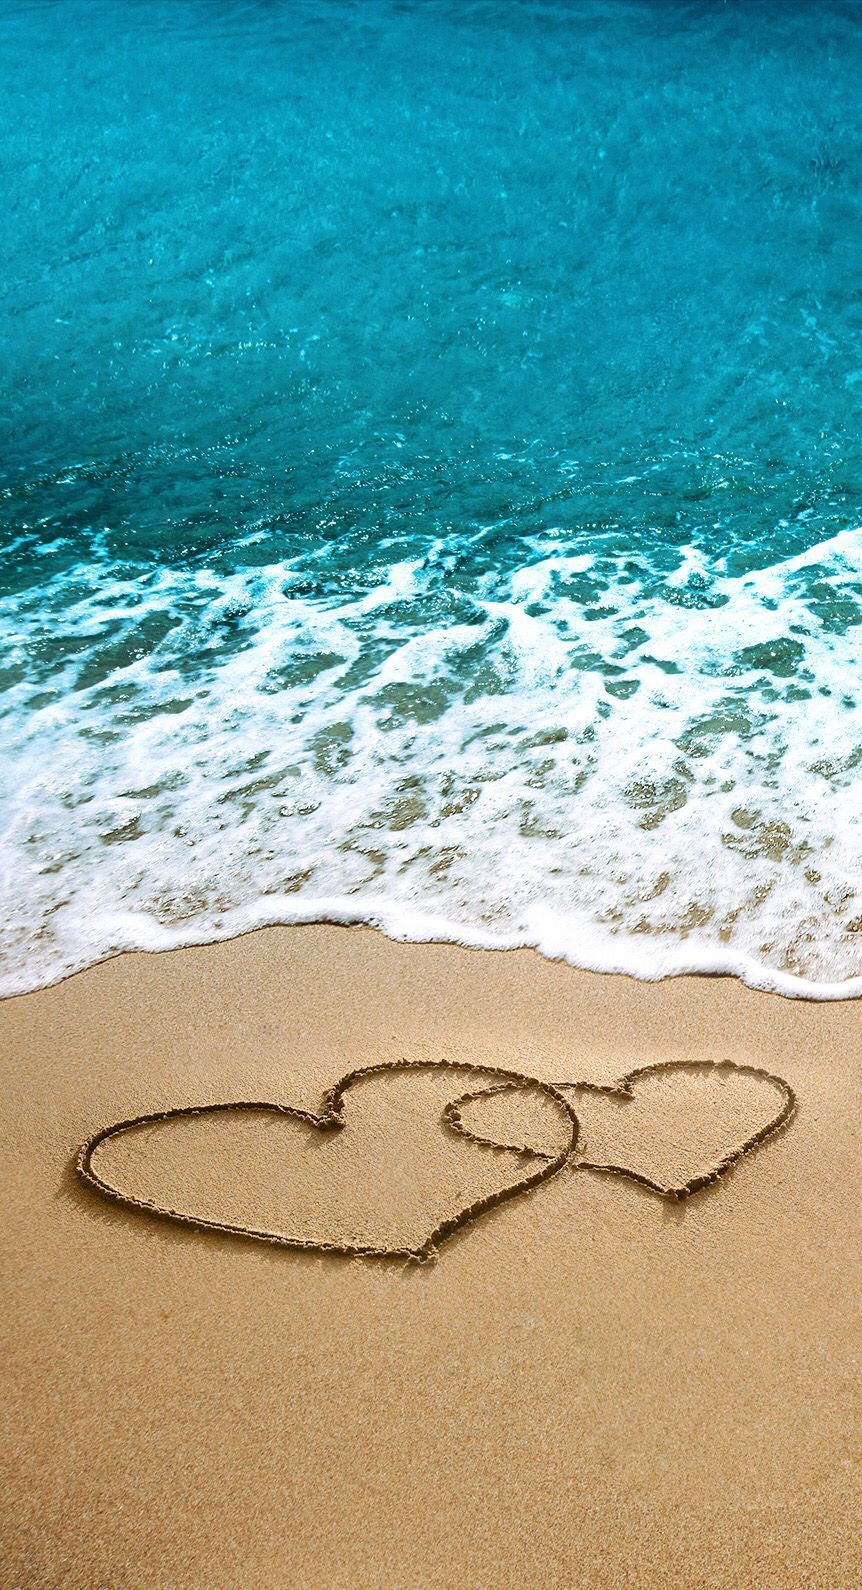 862x1590 Love! ❤️. Summer wallpaper, Beach wallpaper, iPhone wallpaper on WallpaperBat